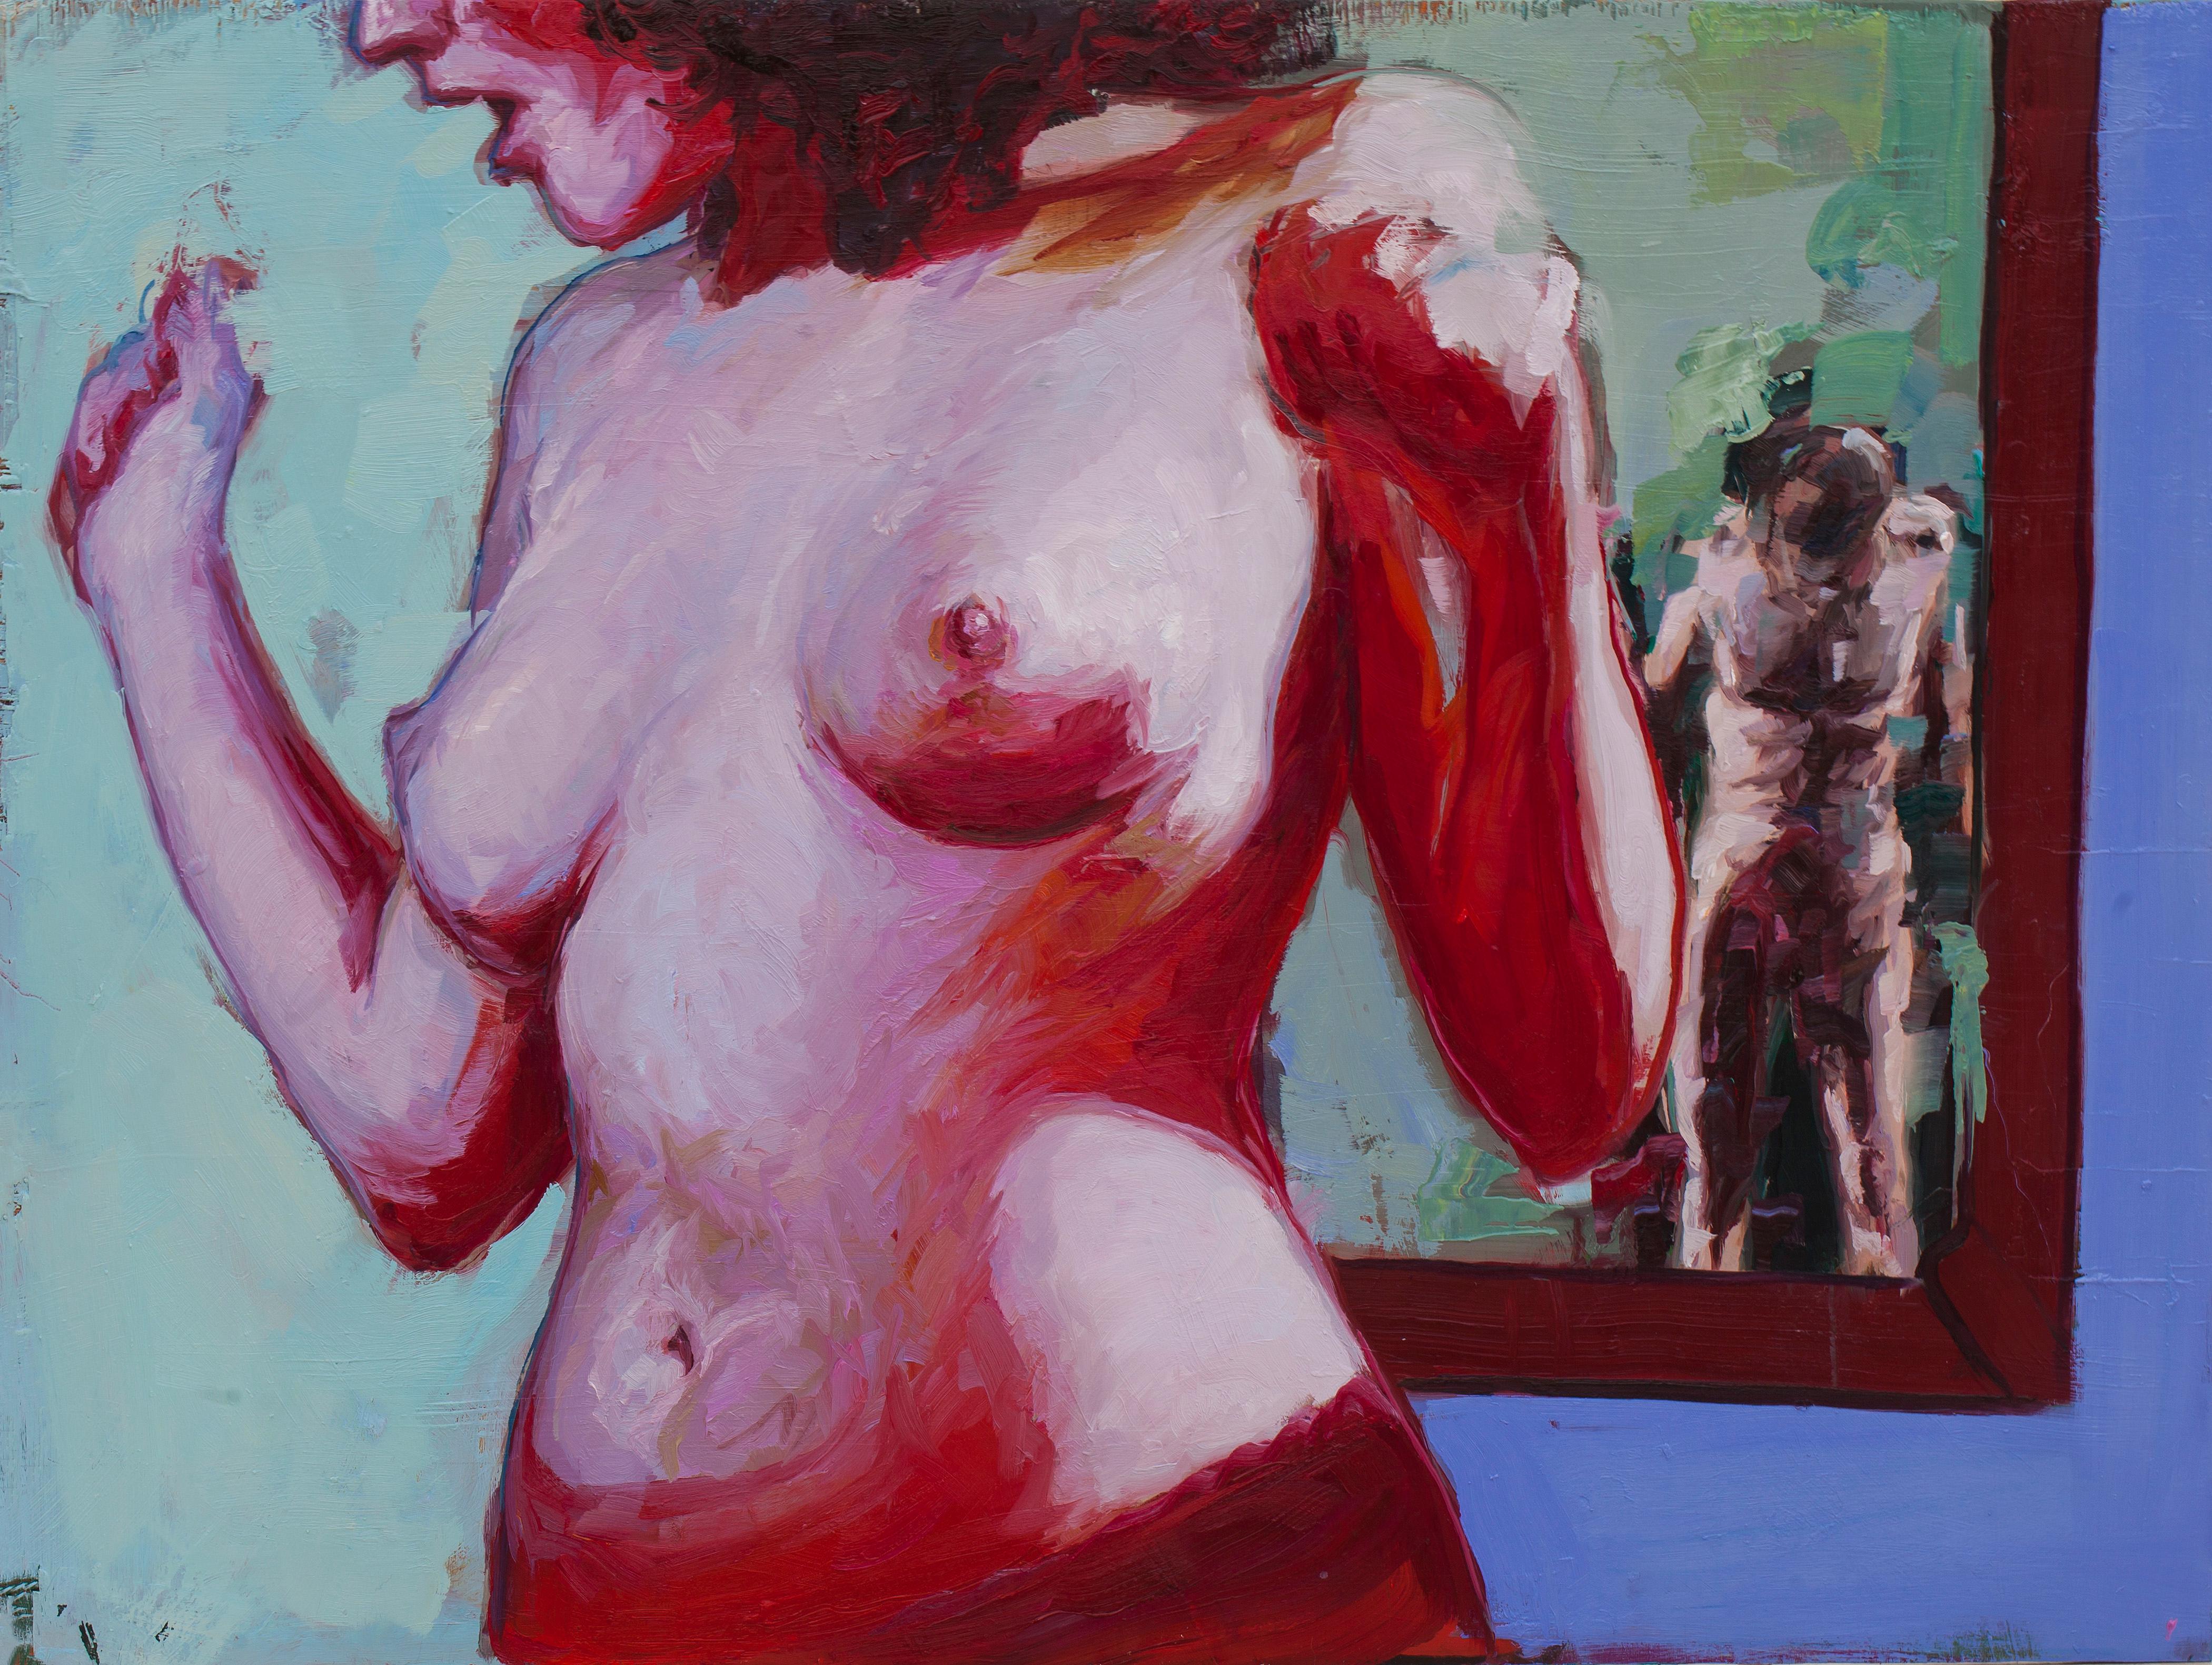 Peinture audacieuse couleur chair représentant une femme nue audacieuse sur un panneau, très texturée